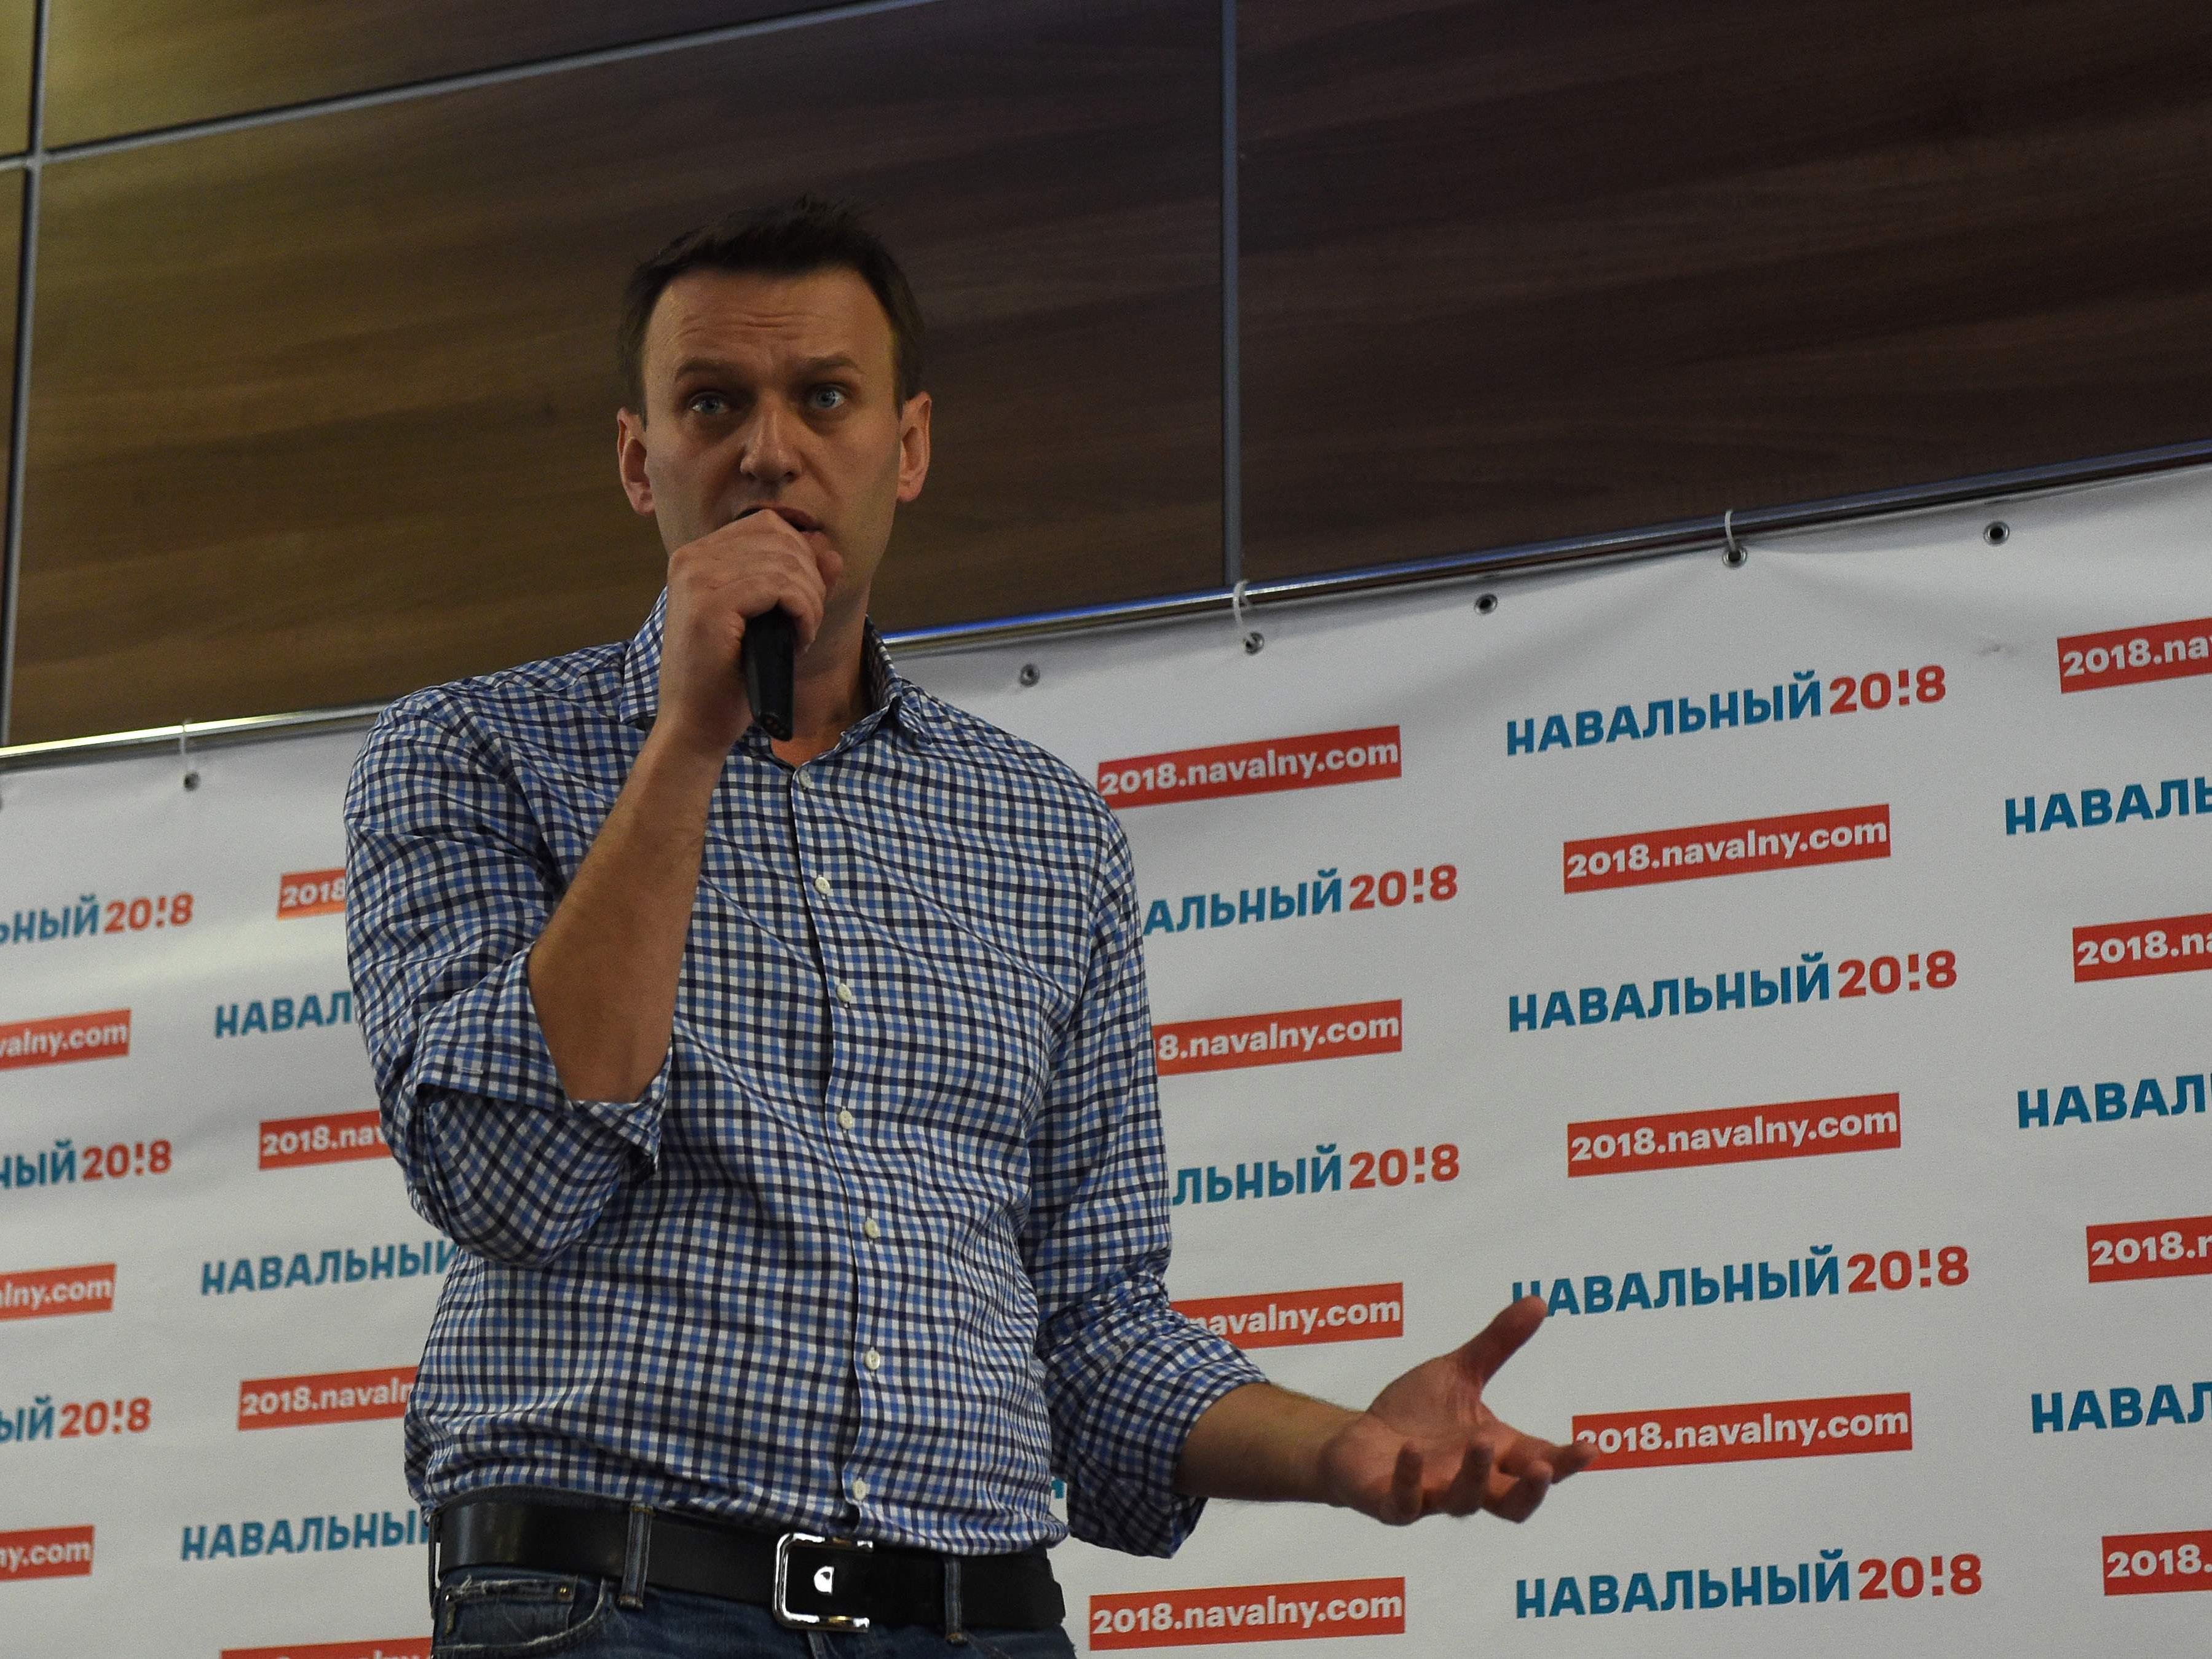 Der russische Oppositionelle Alexej Nawalny wurde offenbar kurz vor einer Demonstration festgenommen.